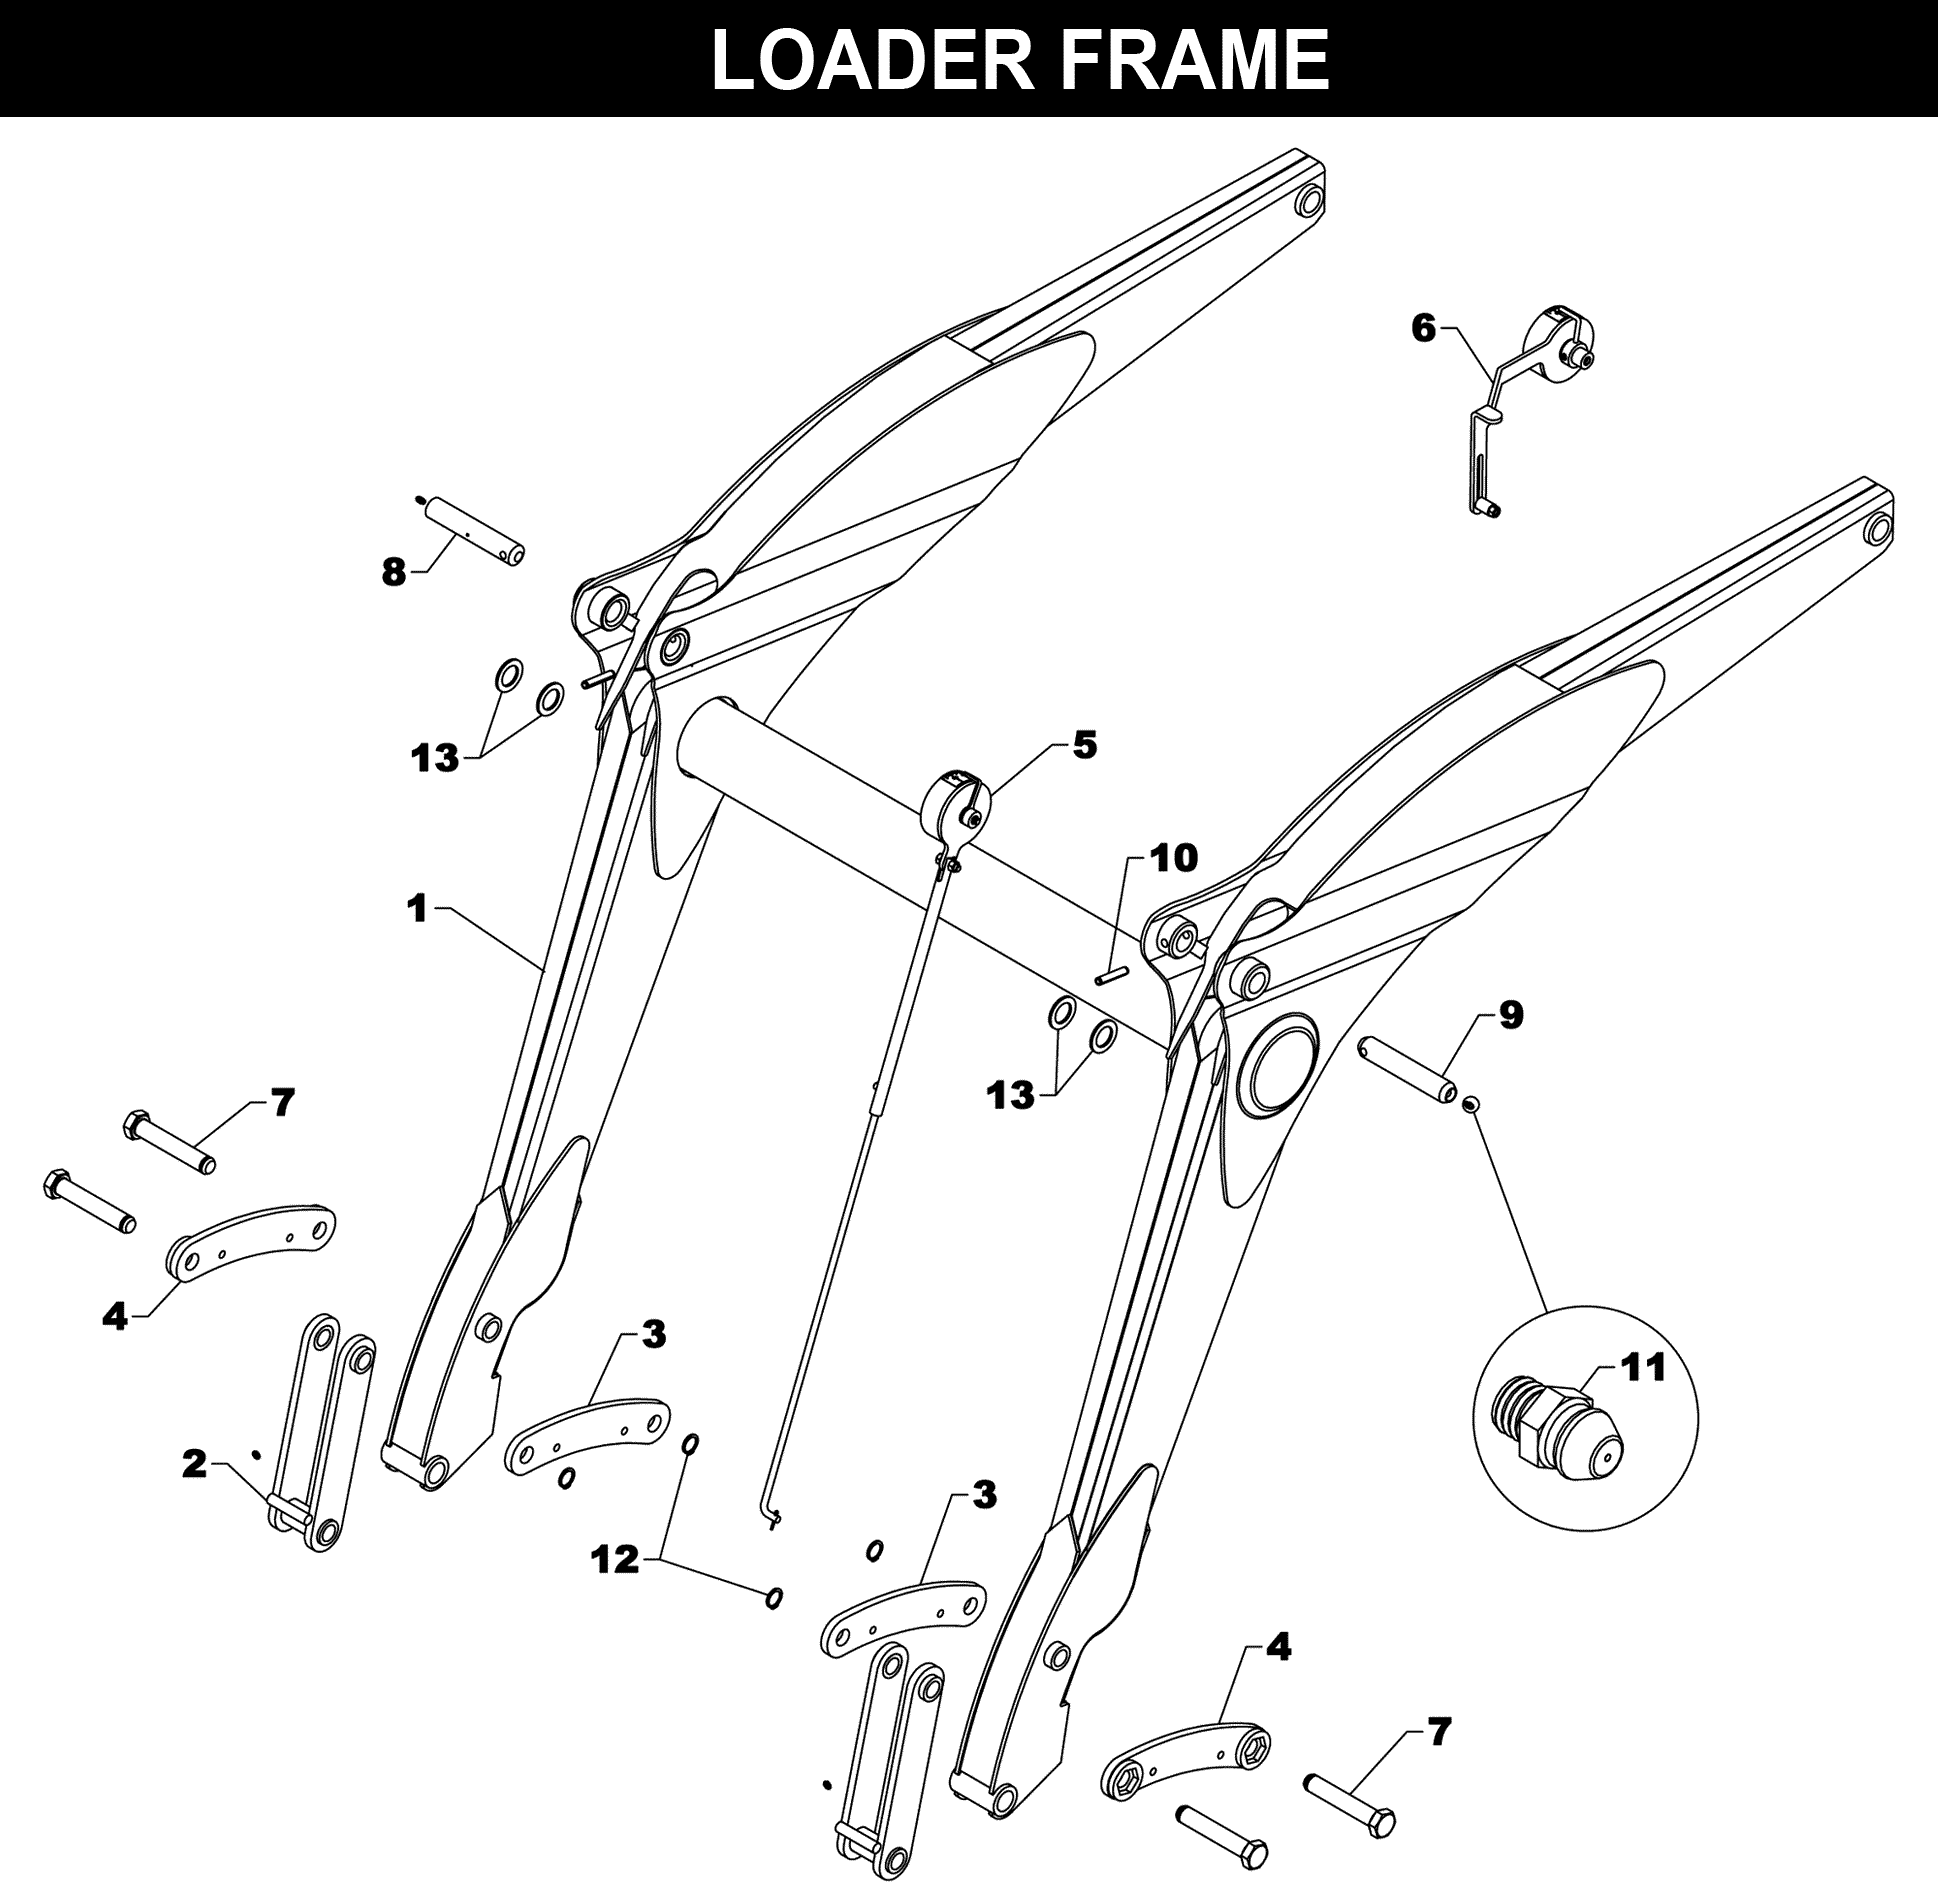 CC-330 Loader Frame